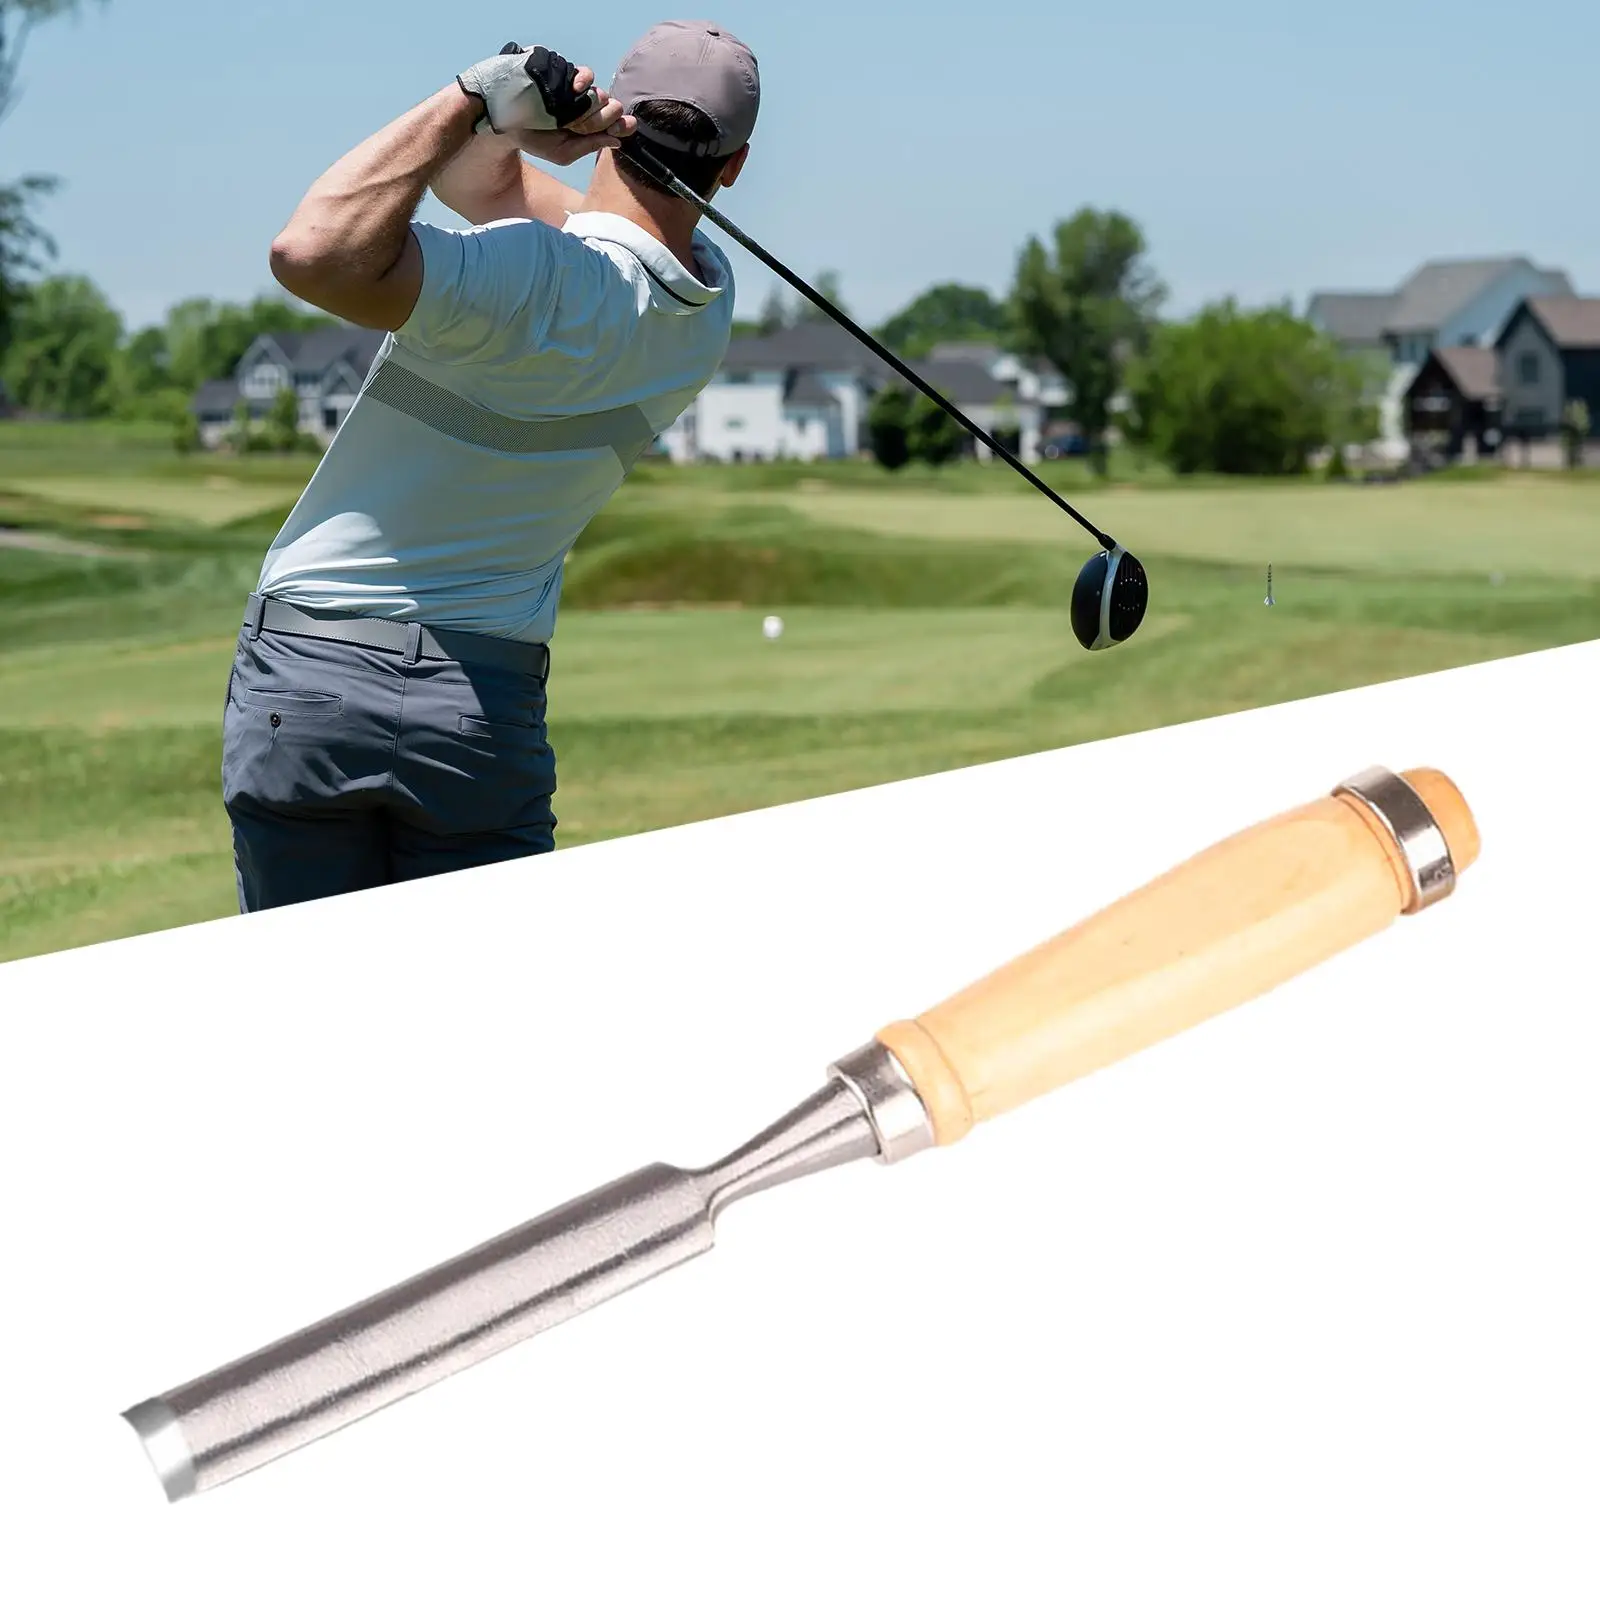 Golf úchop odstranění nářadí lehko na použít gadget s dřevo ovládat golf nářadí odstraňovač saver golf klub úchop páska stahovací pro odstranění